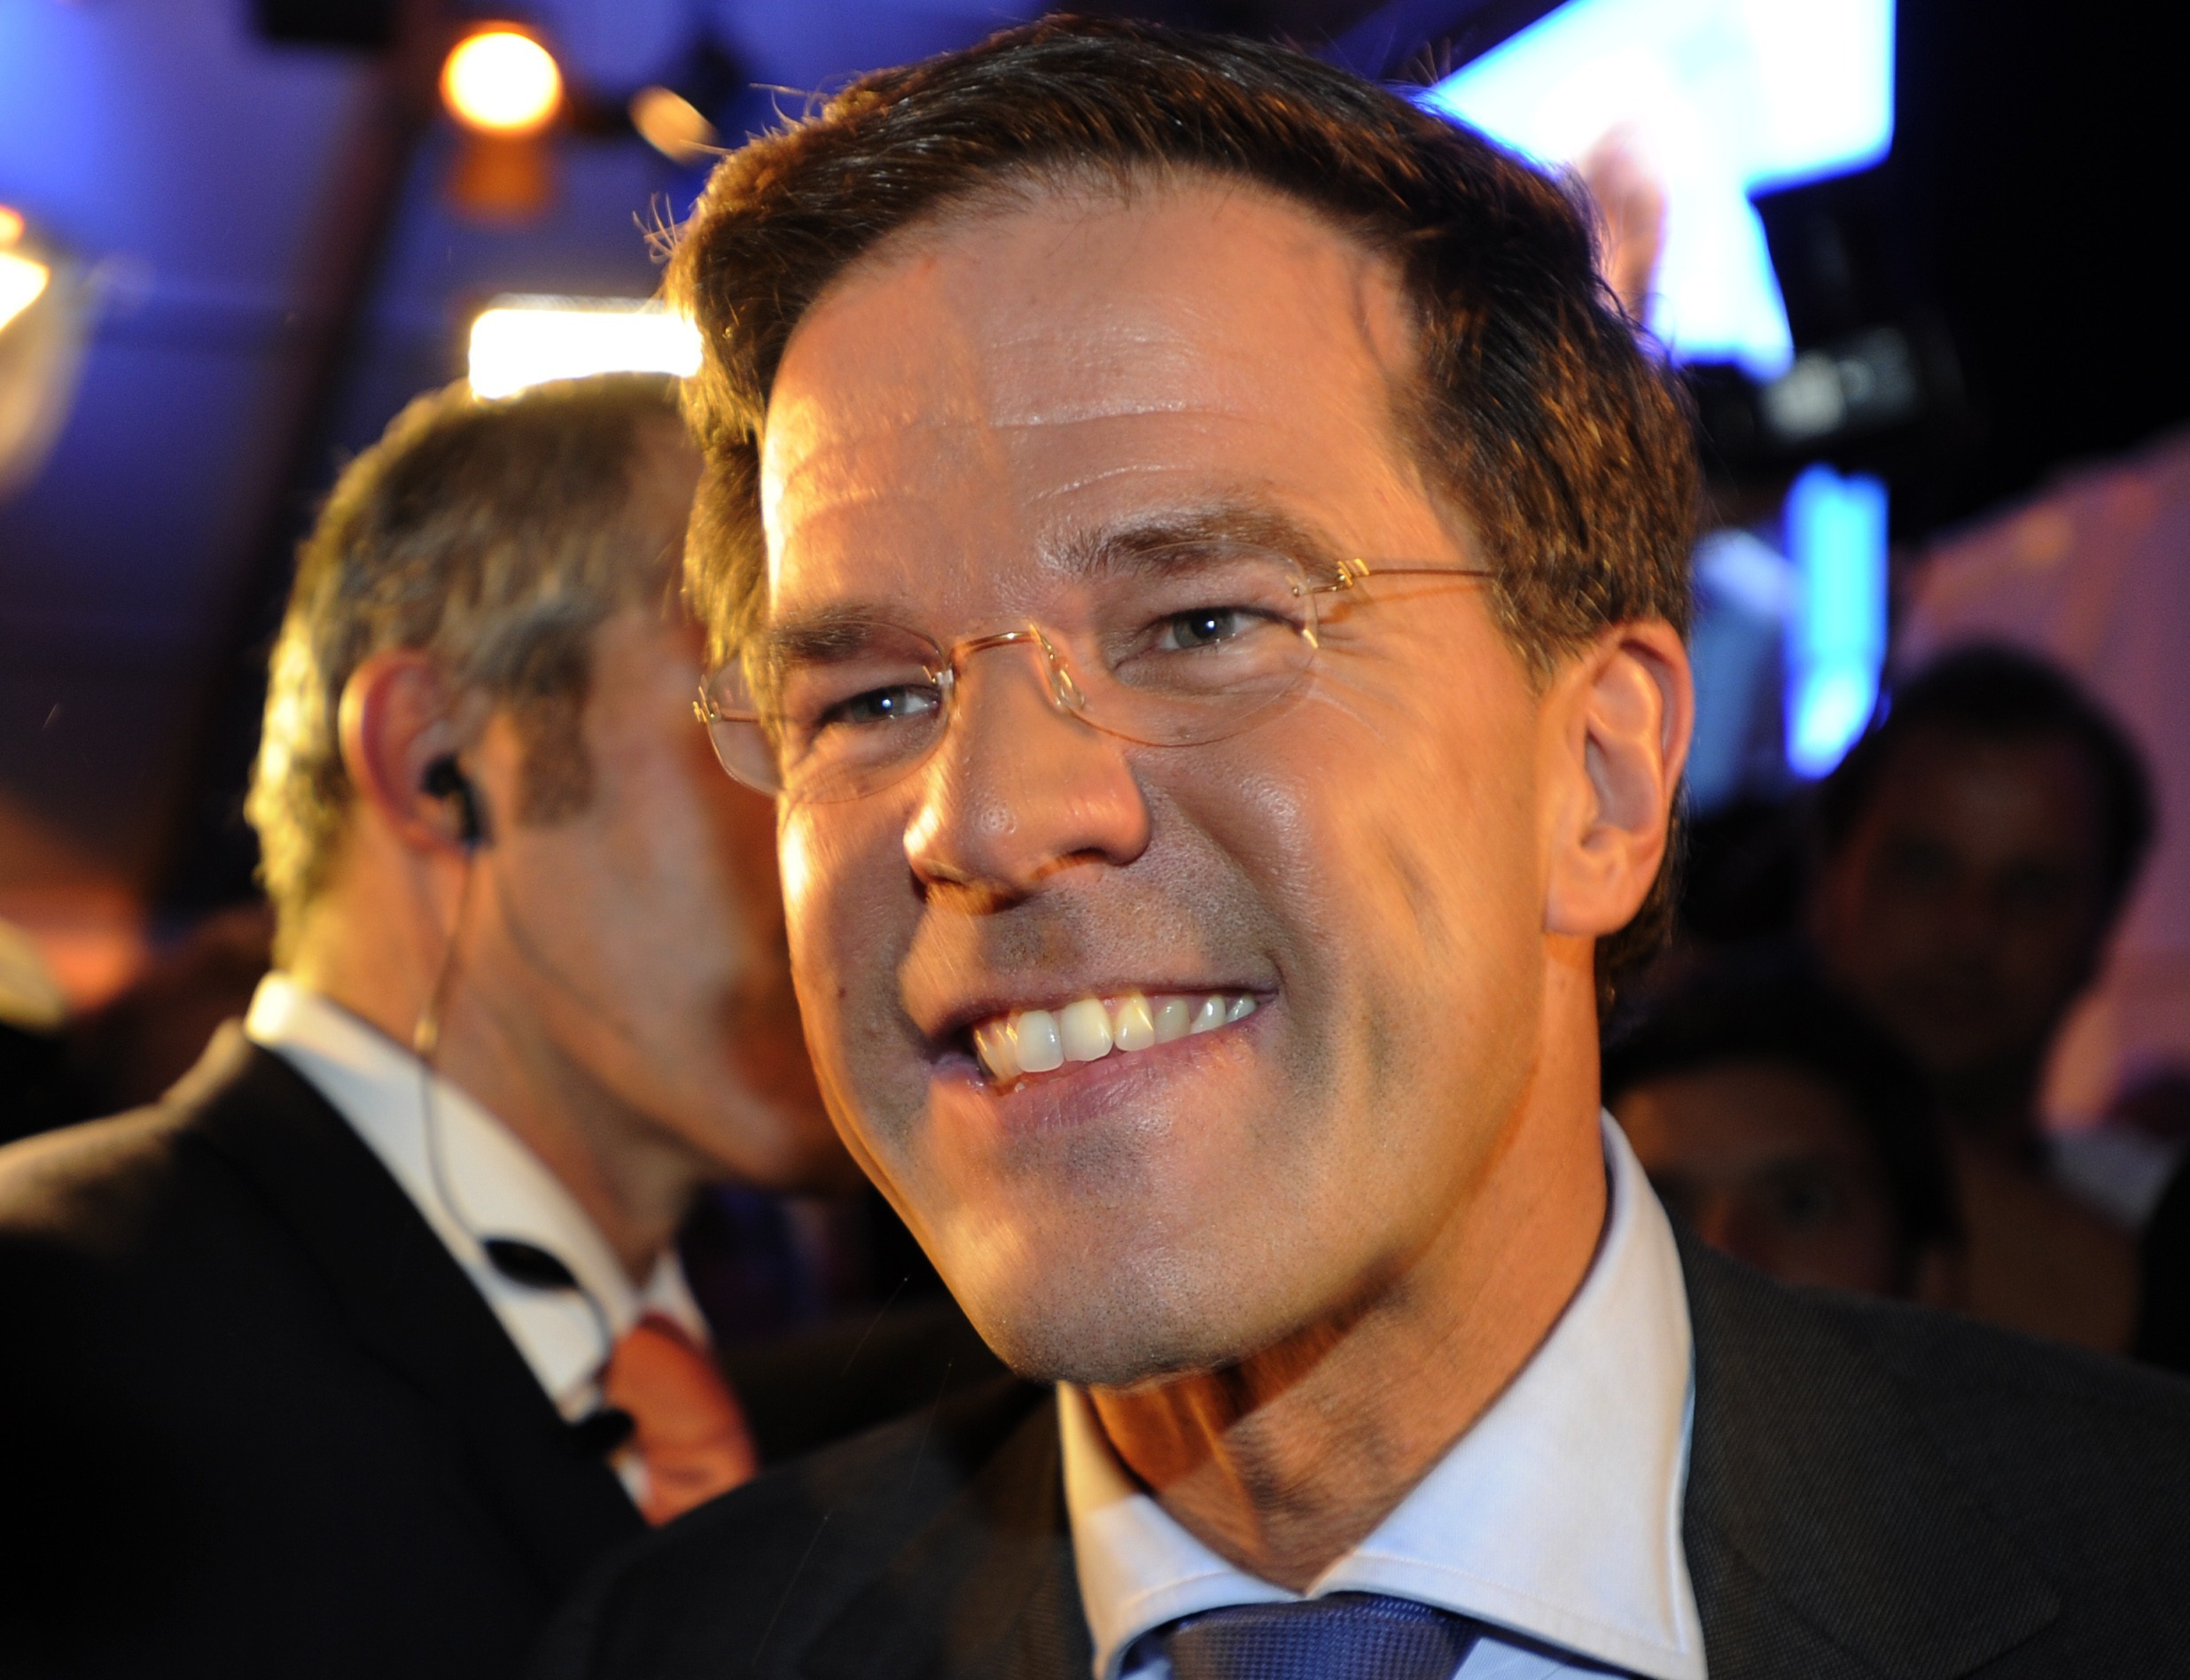 Φτου κι απ’ την αρχή! Η Ολλανδία μιλά για έξοδο της Ελλάδας από το ευρώ